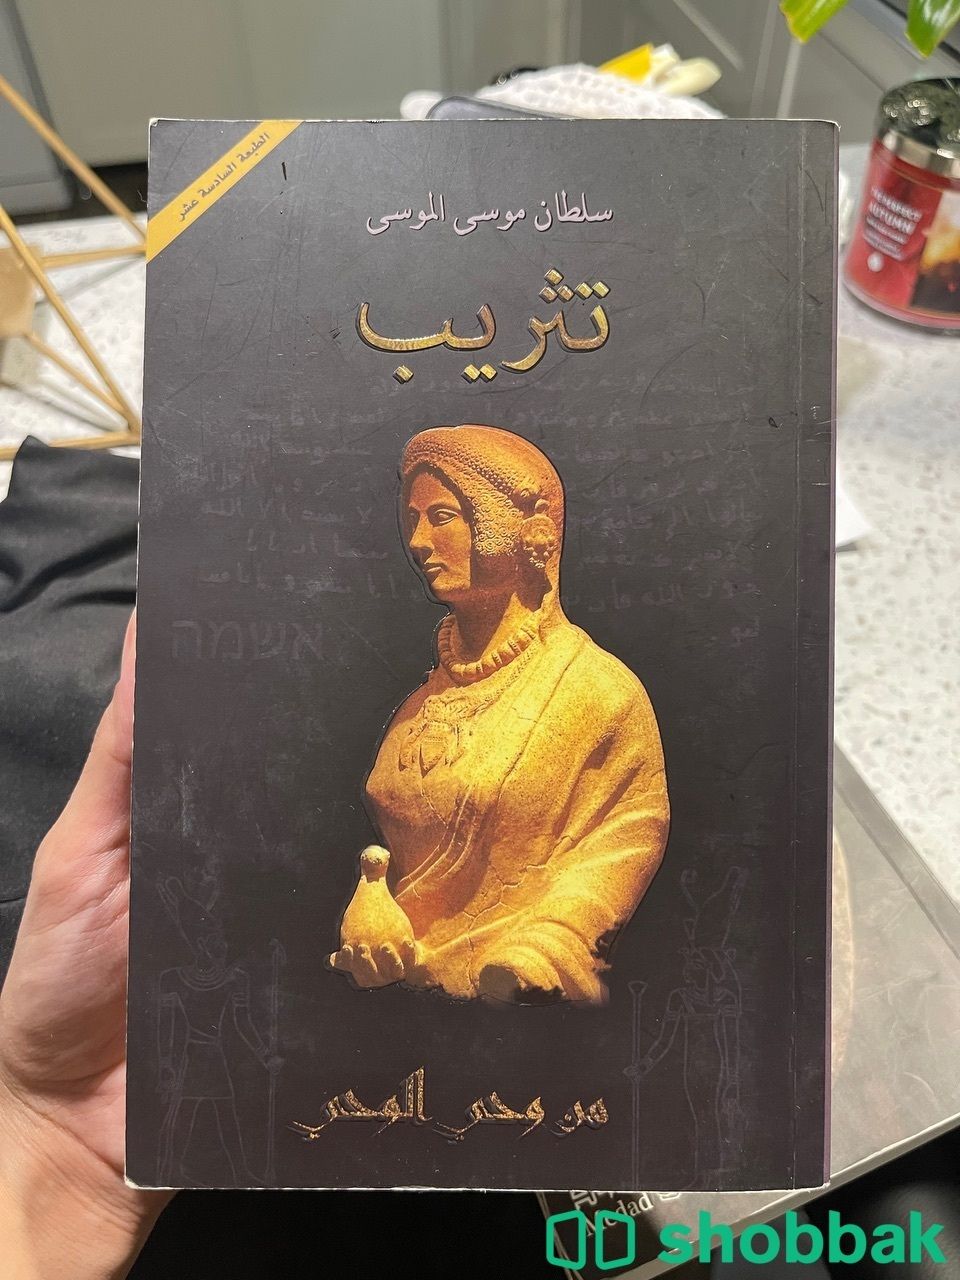 كتاب تثريب لسلطان الموسى Shobbak Saudi Arabia